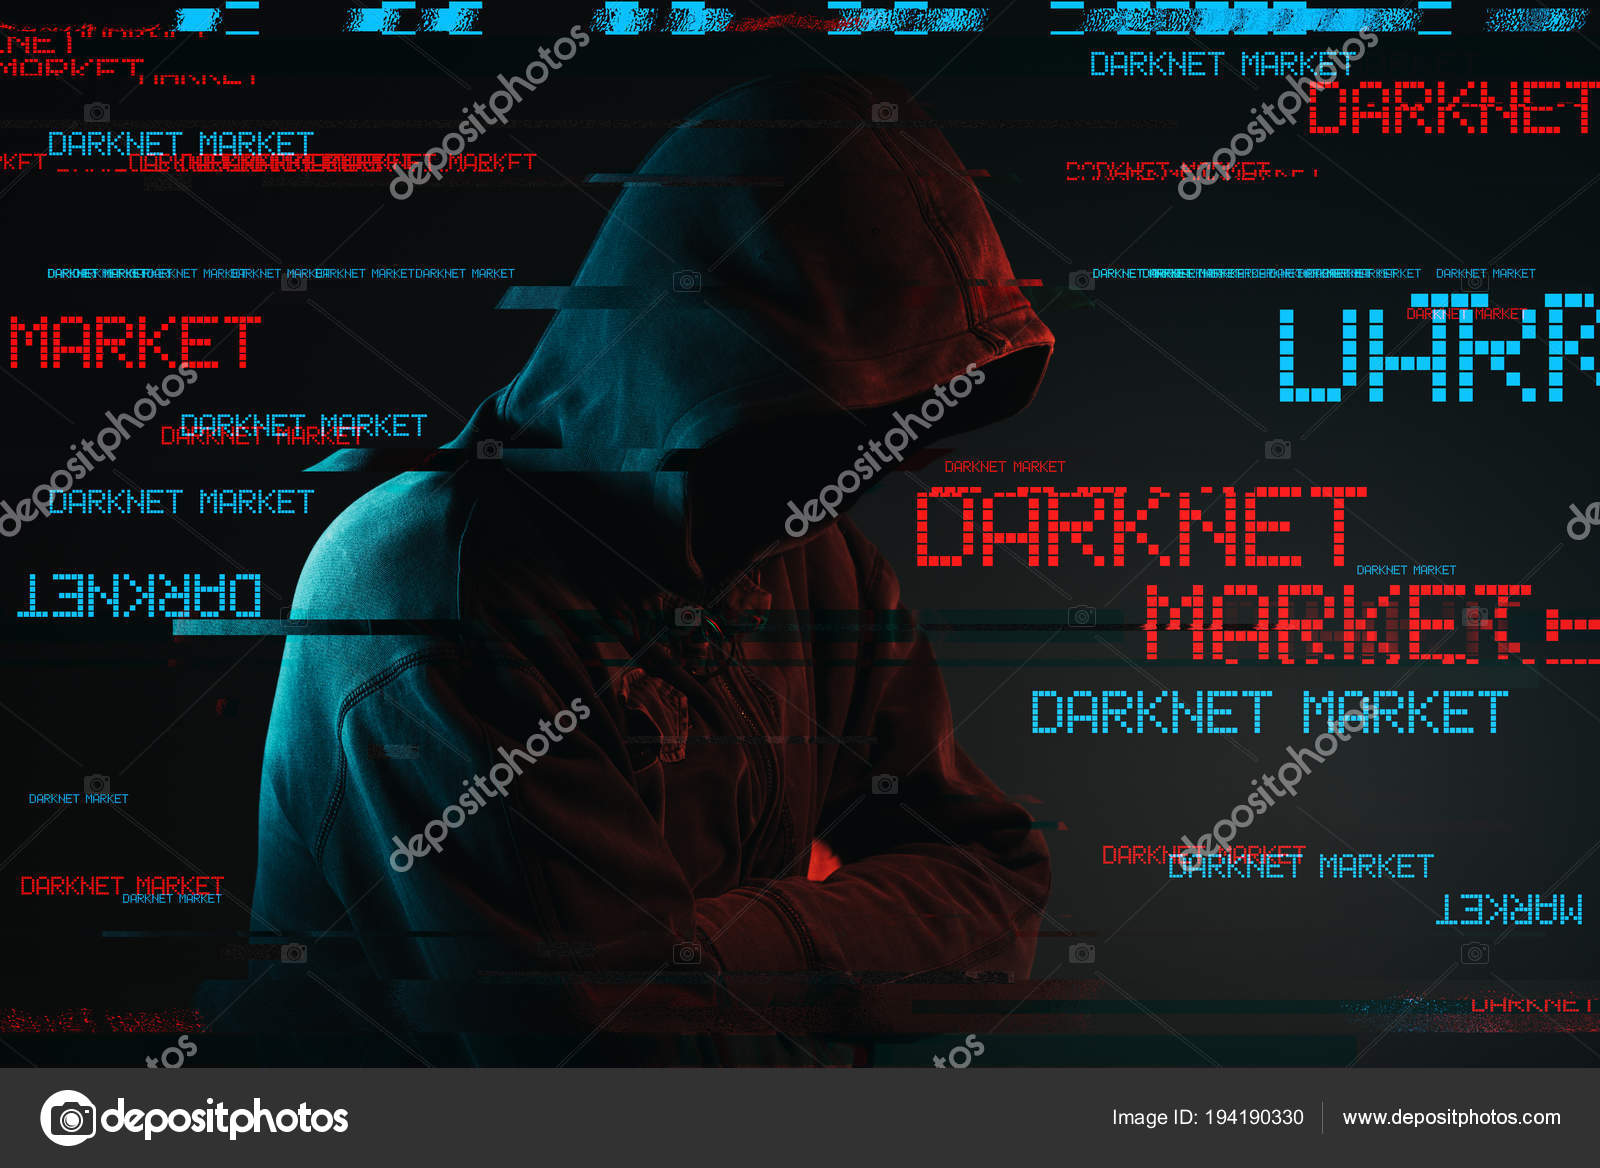 What Is The Darknet Market